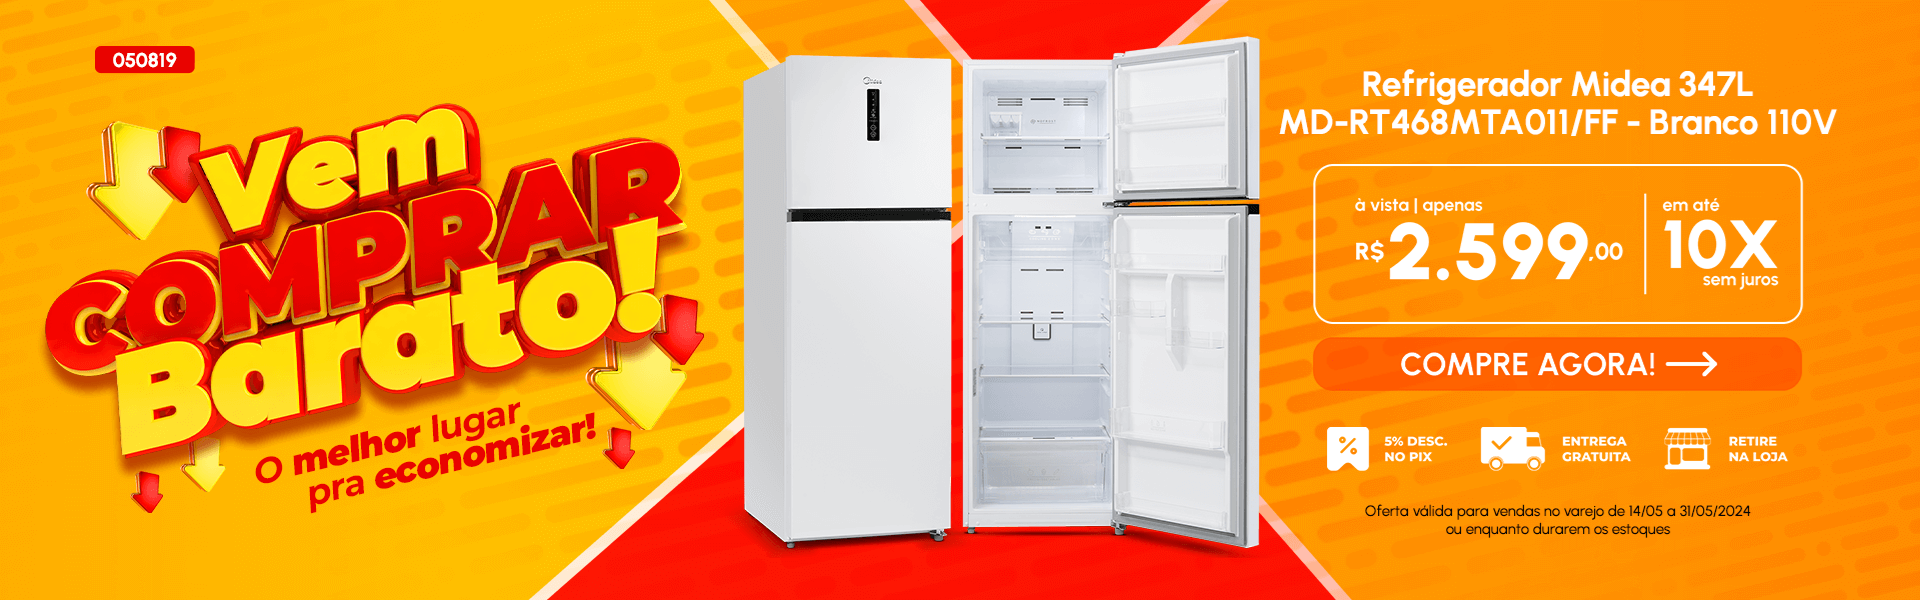 Refrigerador Midea 347L Branco